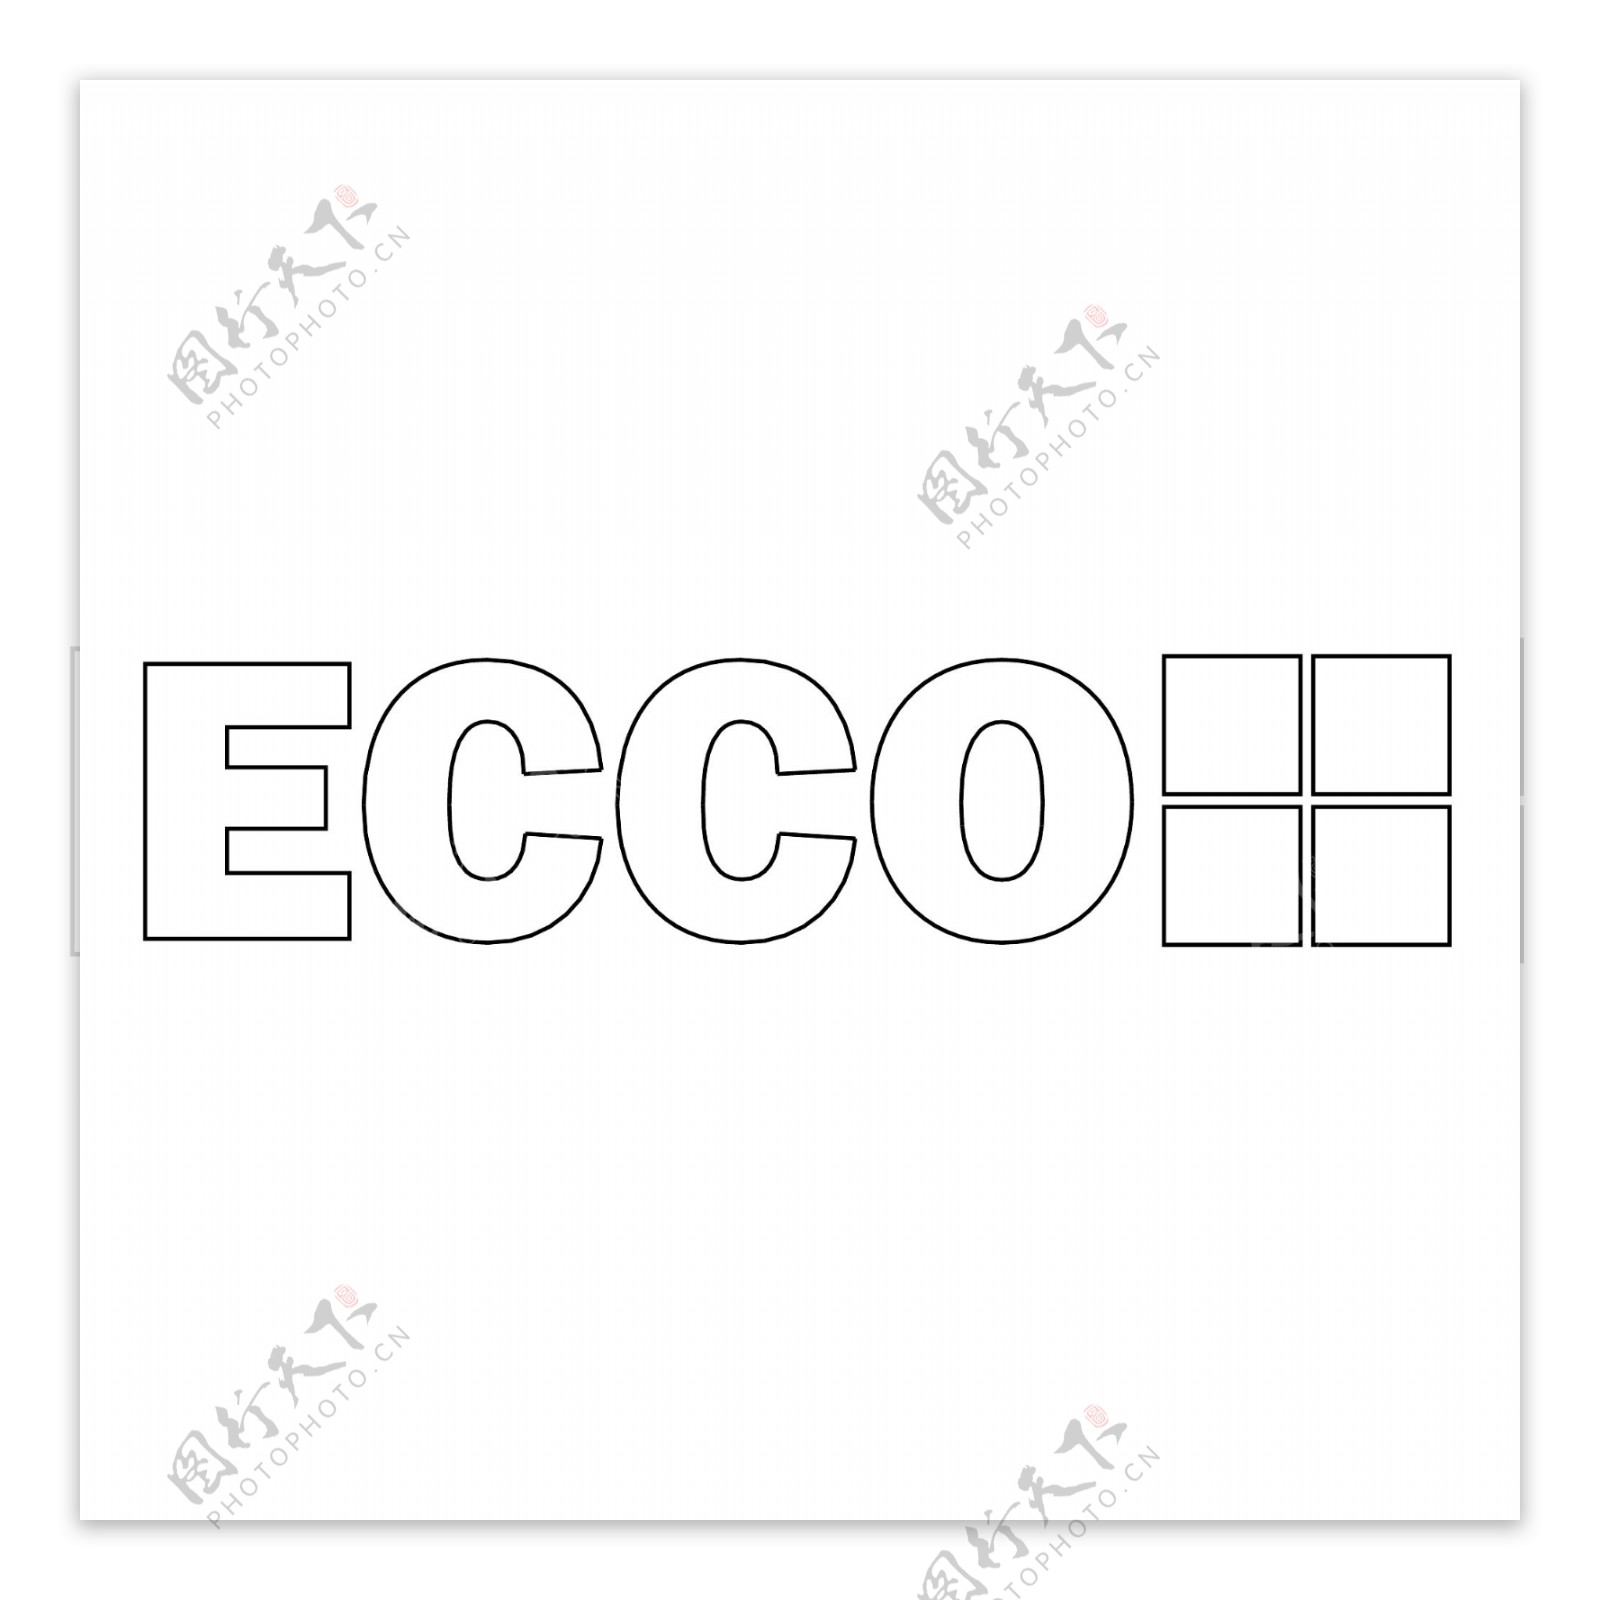 ECCO1